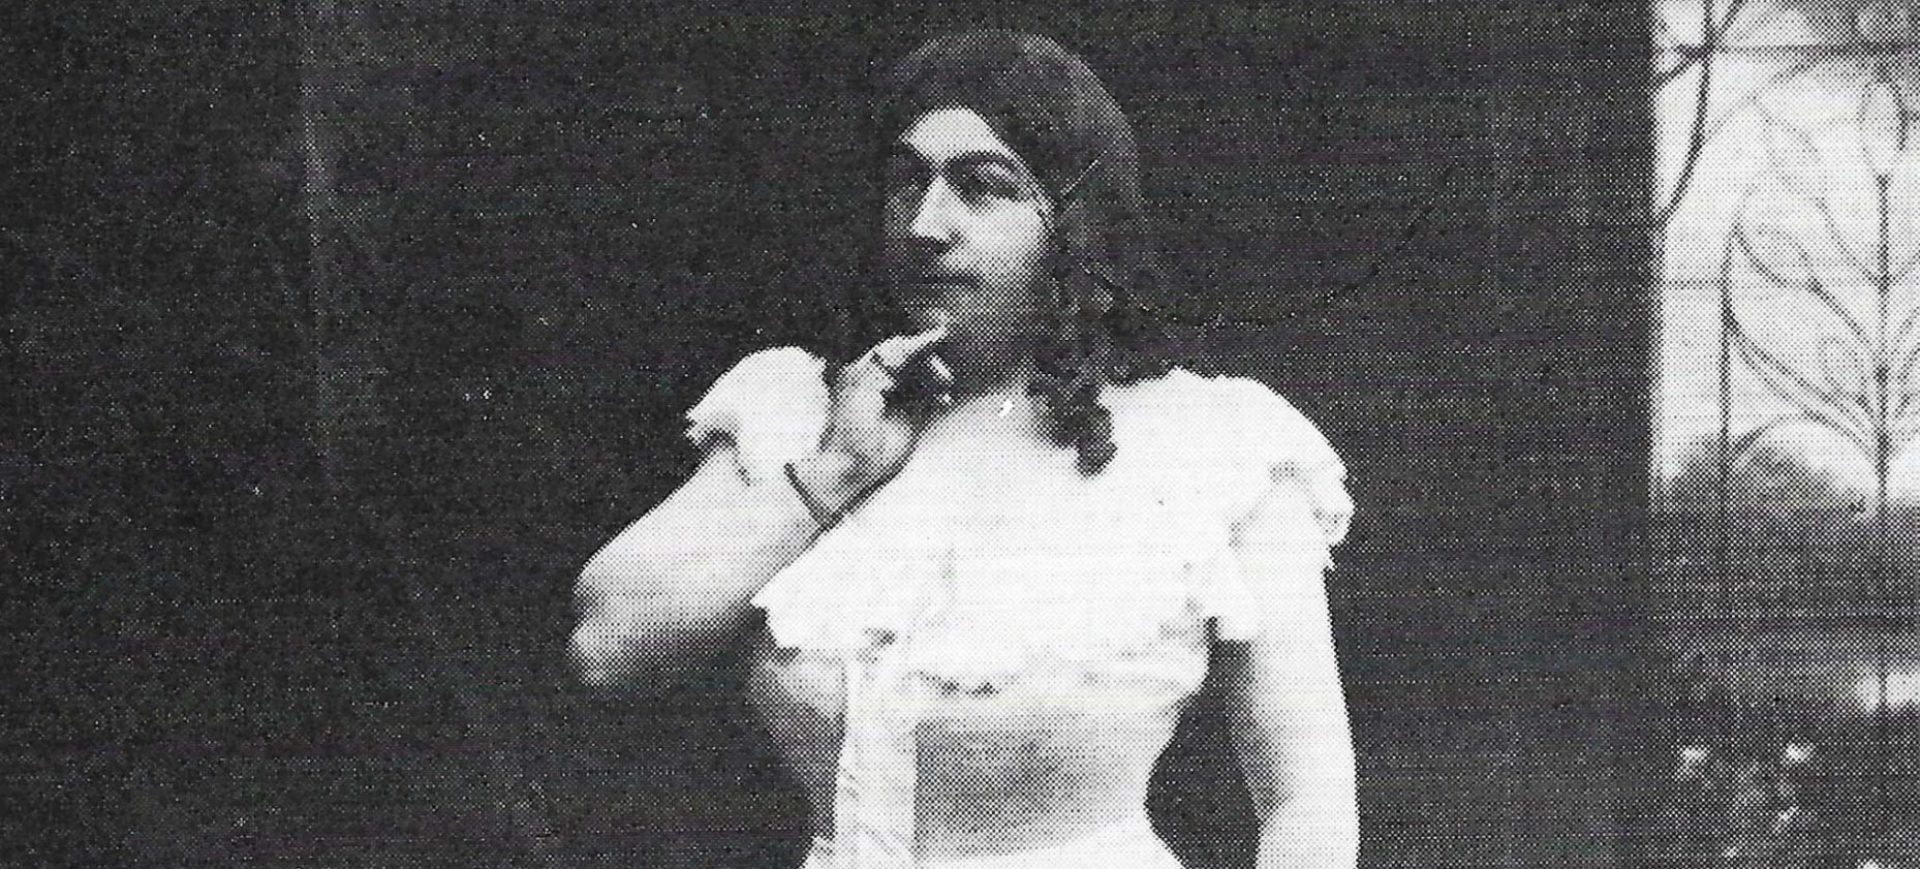 Divertissementchen - Solist im Kostüm um 1900